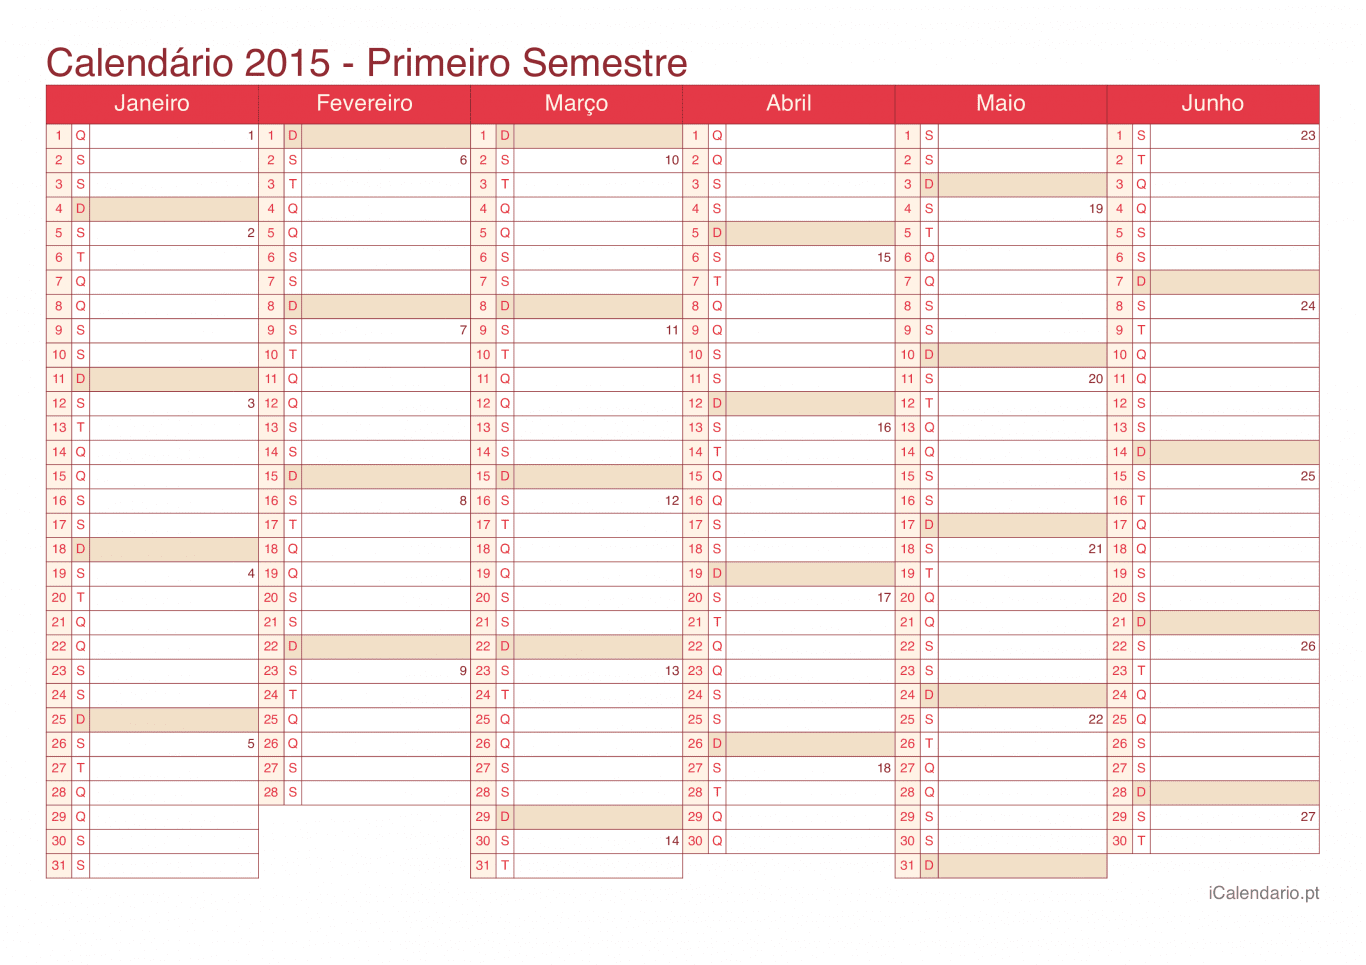 Calendário por semestre com números da semana 2015 - Cherry